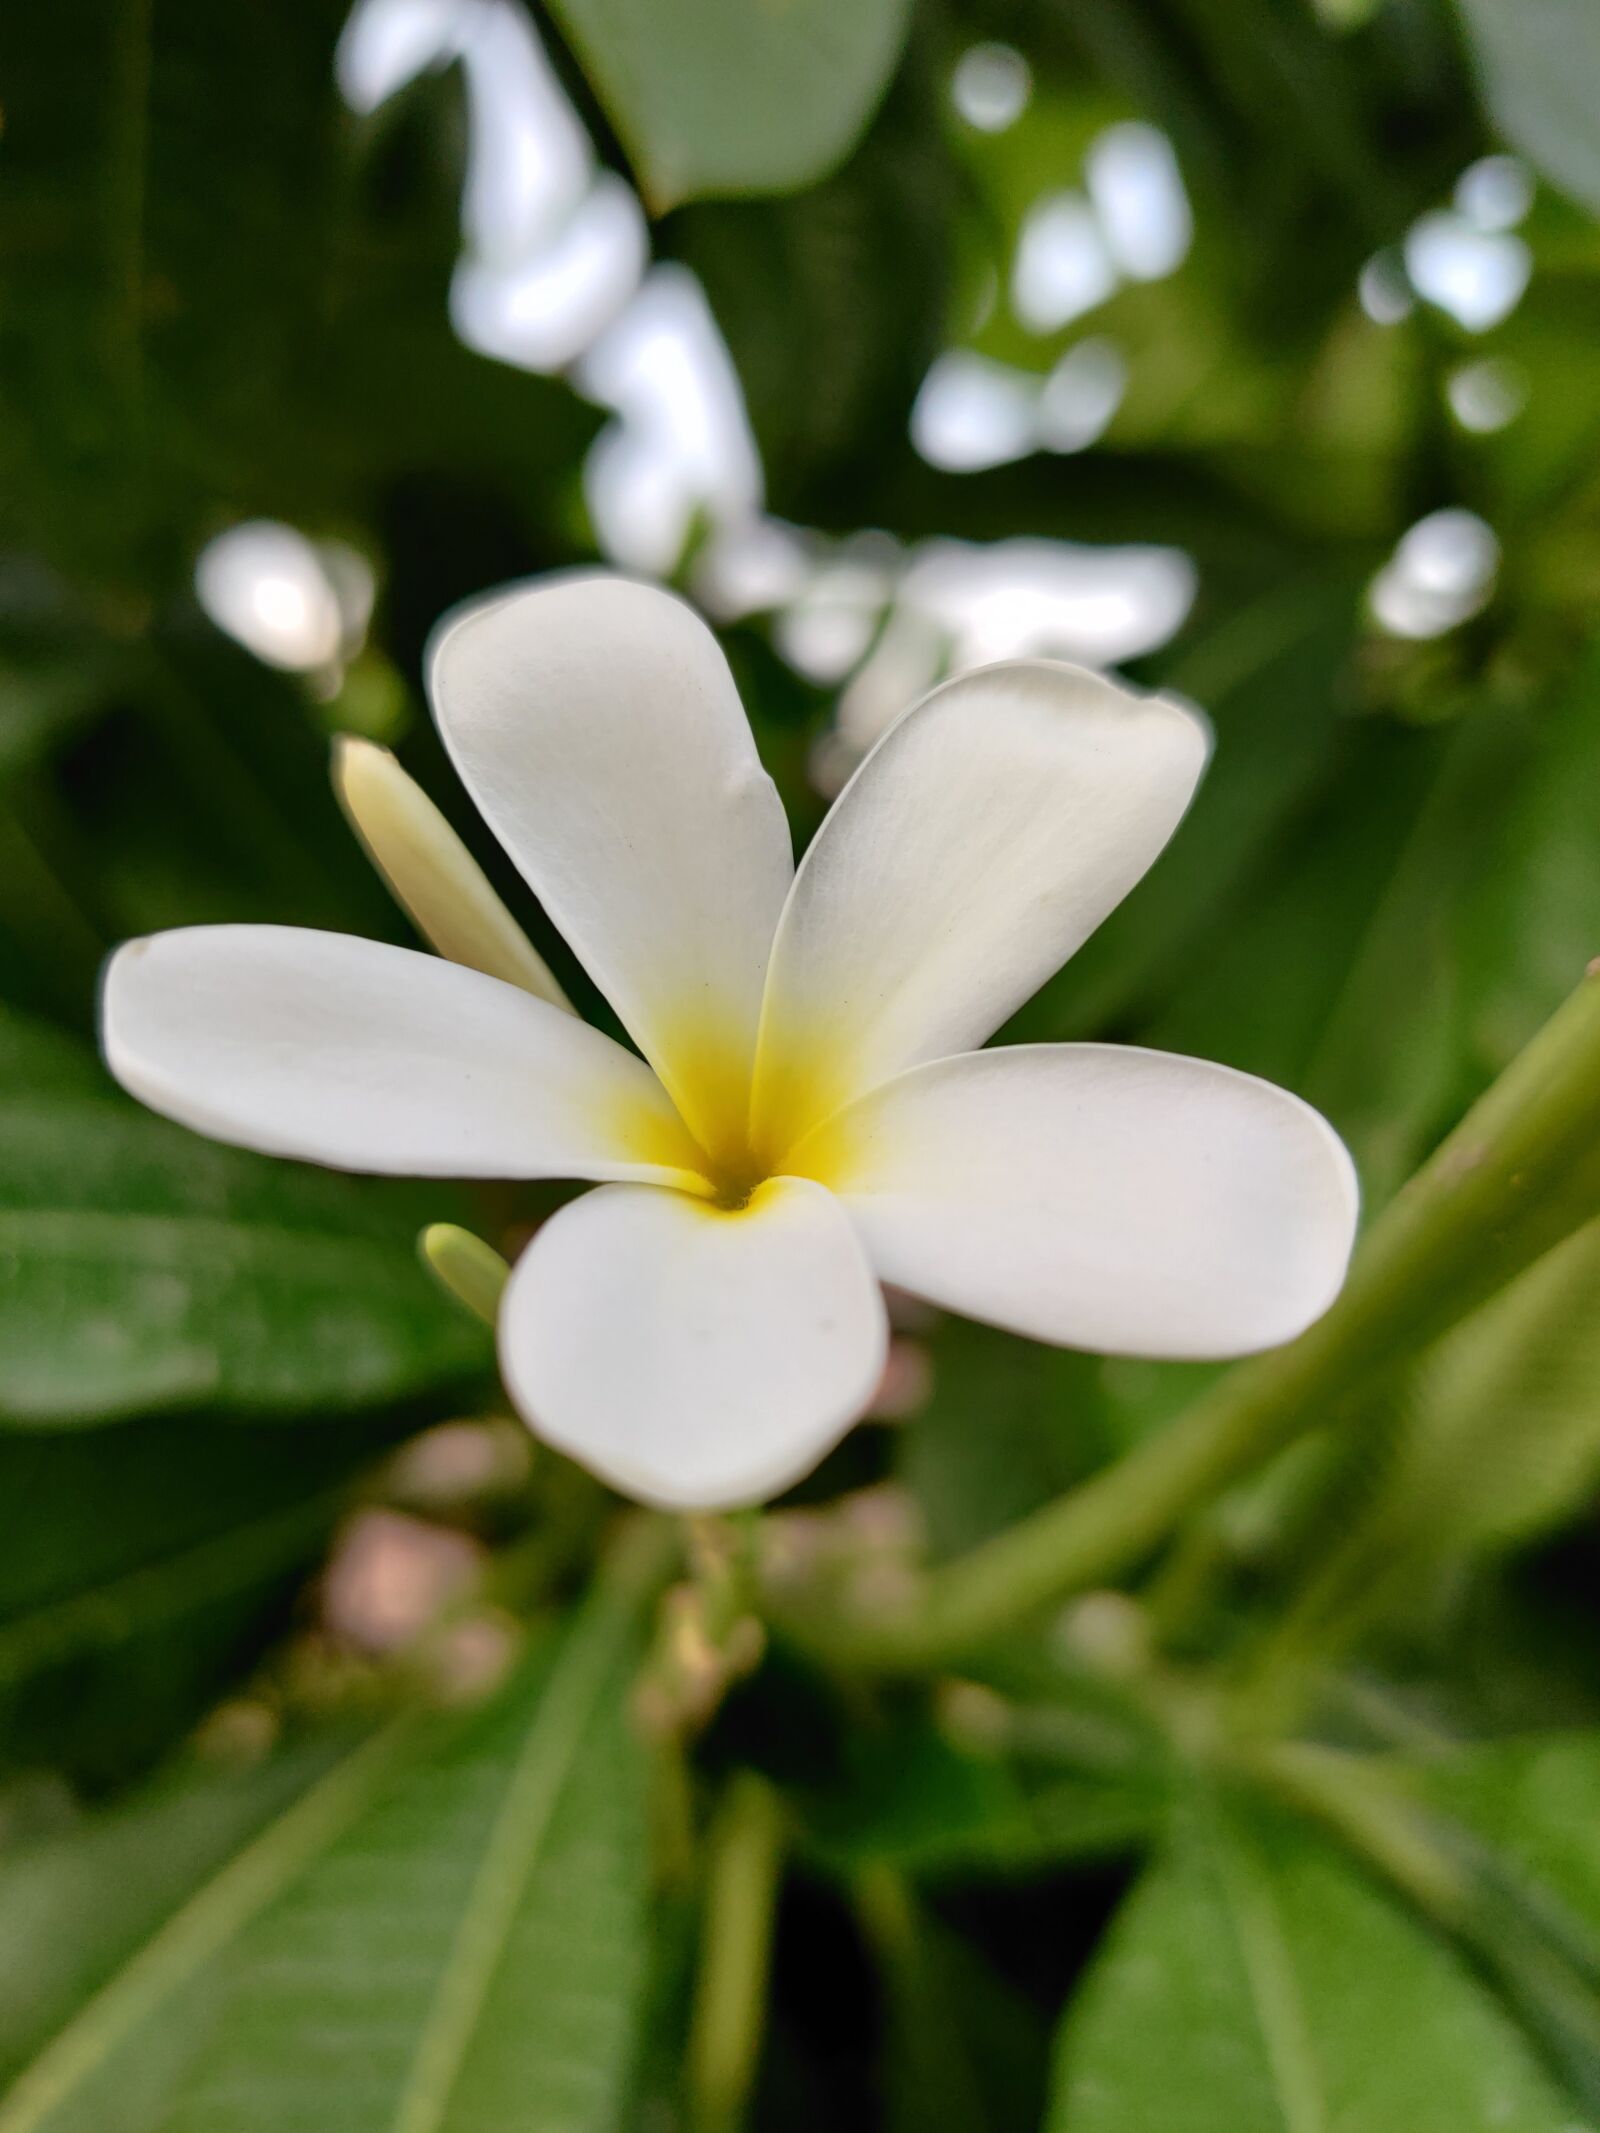 OnePlus HD1901 sample photo. Beautiful flower, nature, beautiful photography